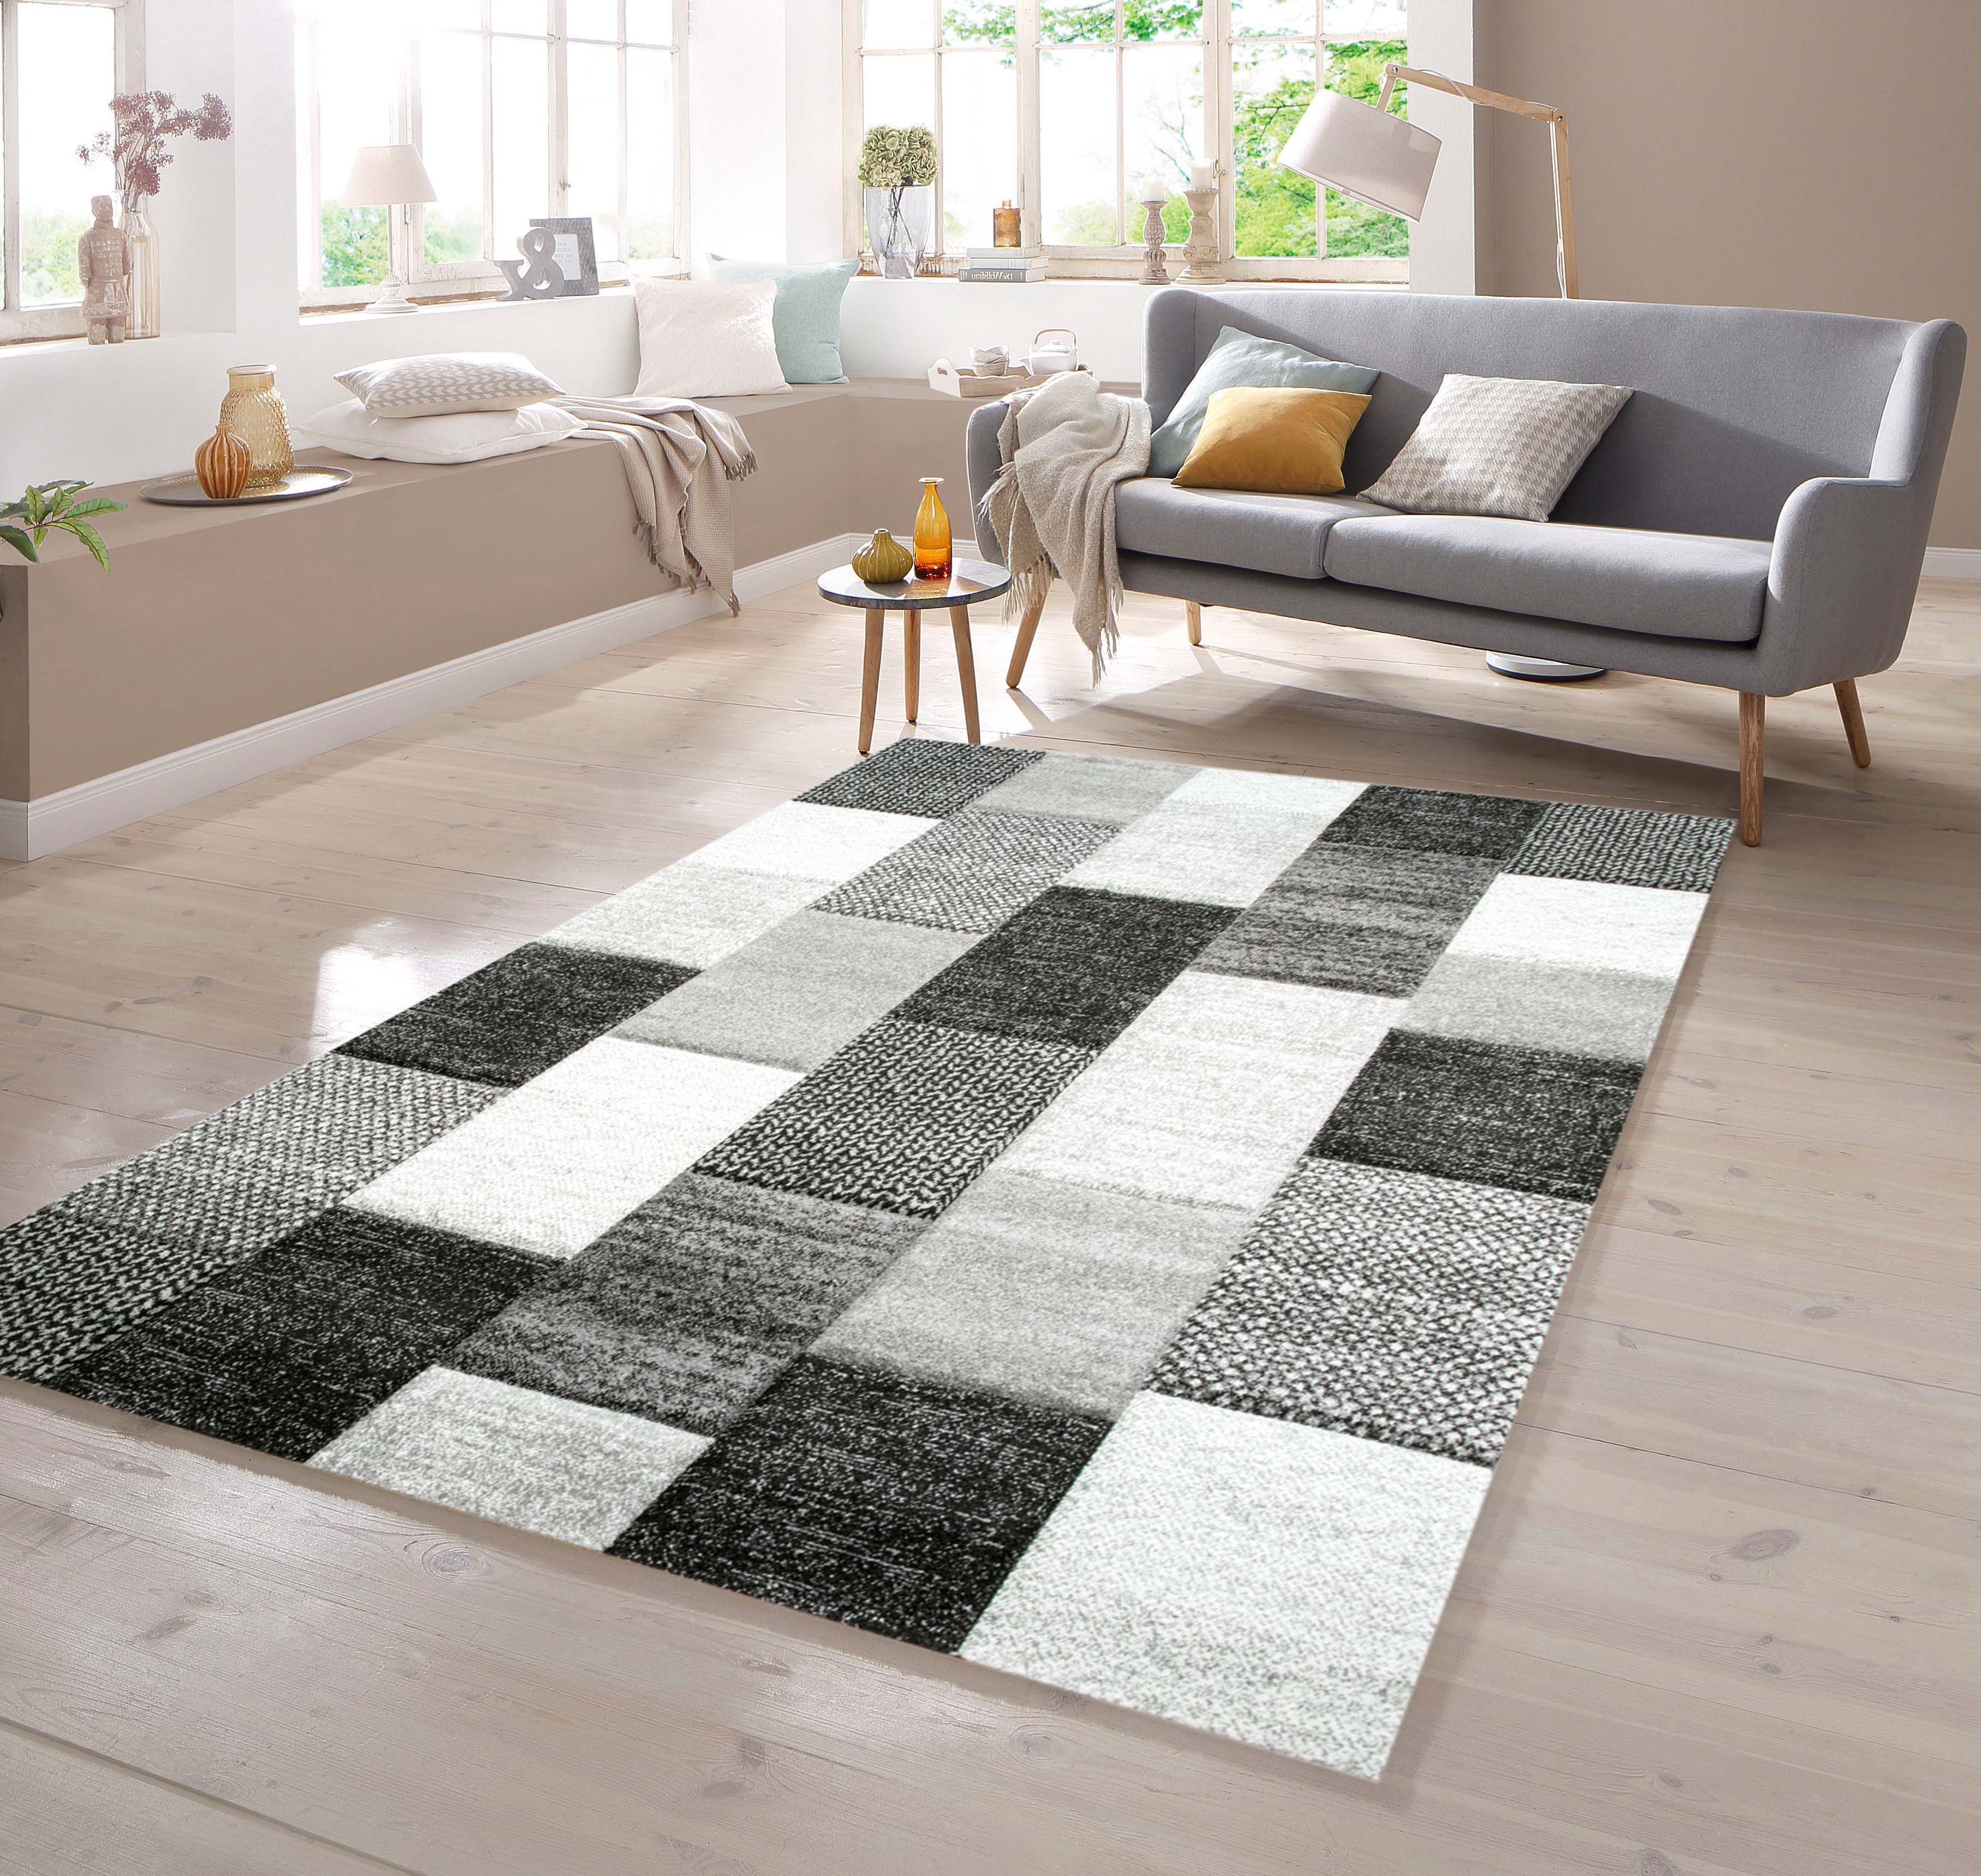 Teppich Designer Teppich mit Konturenschnitt Karo Muster Grau Weiß Schwarz, TeppichHome24, rechteckig